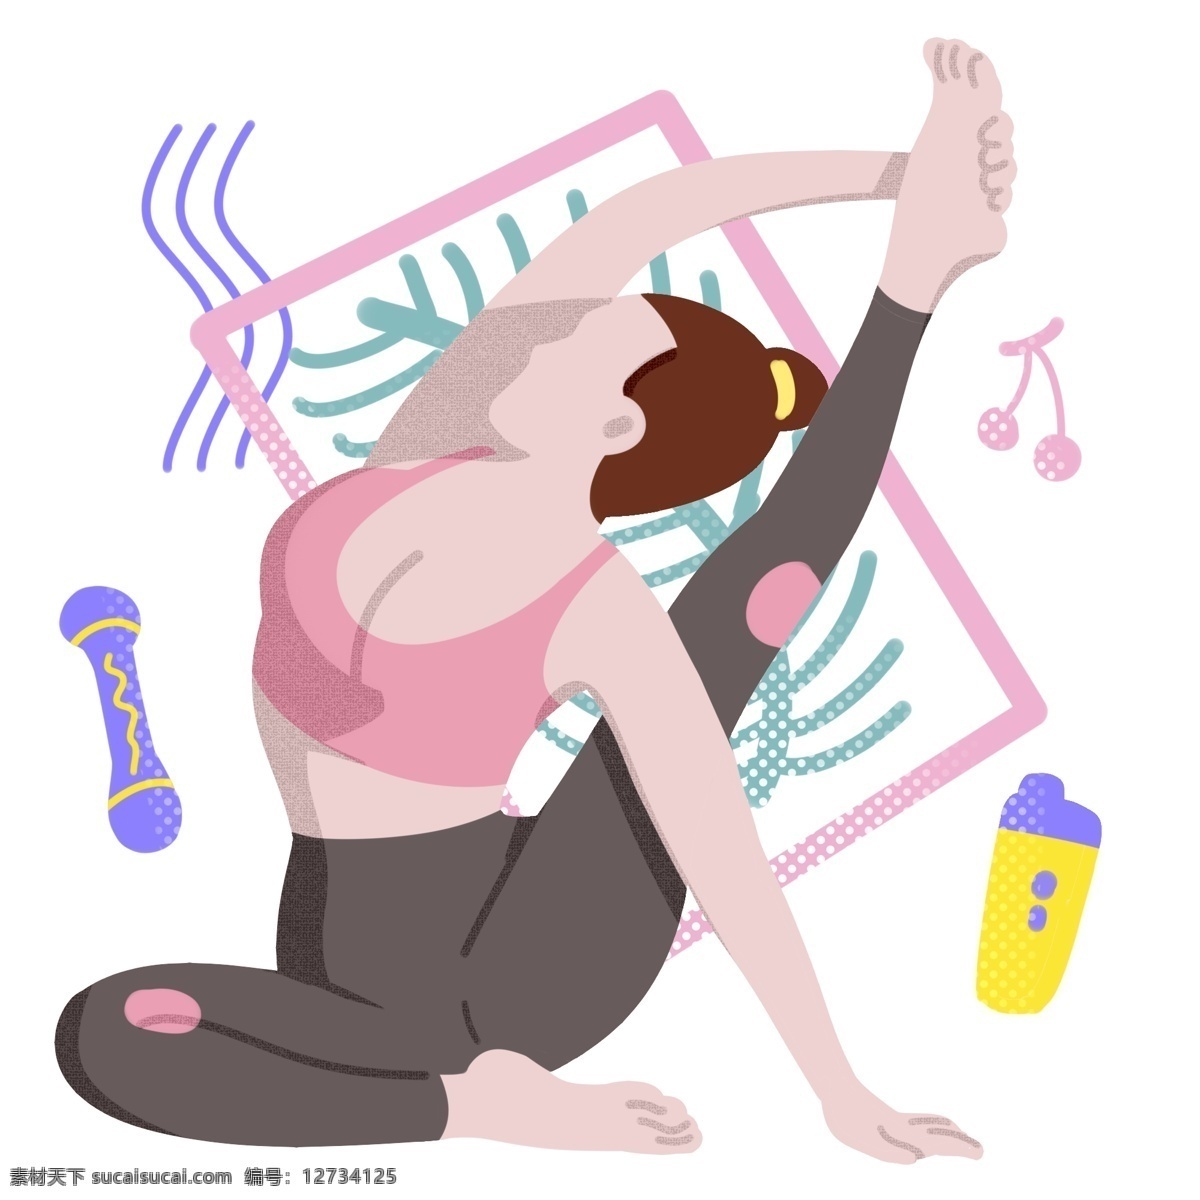 抬 腿 运动 女孩 插画 抬腿运动 热身 练瑜伽的女孩 锻炼身体 健身的女孩 健身器材 运动水杯装饰